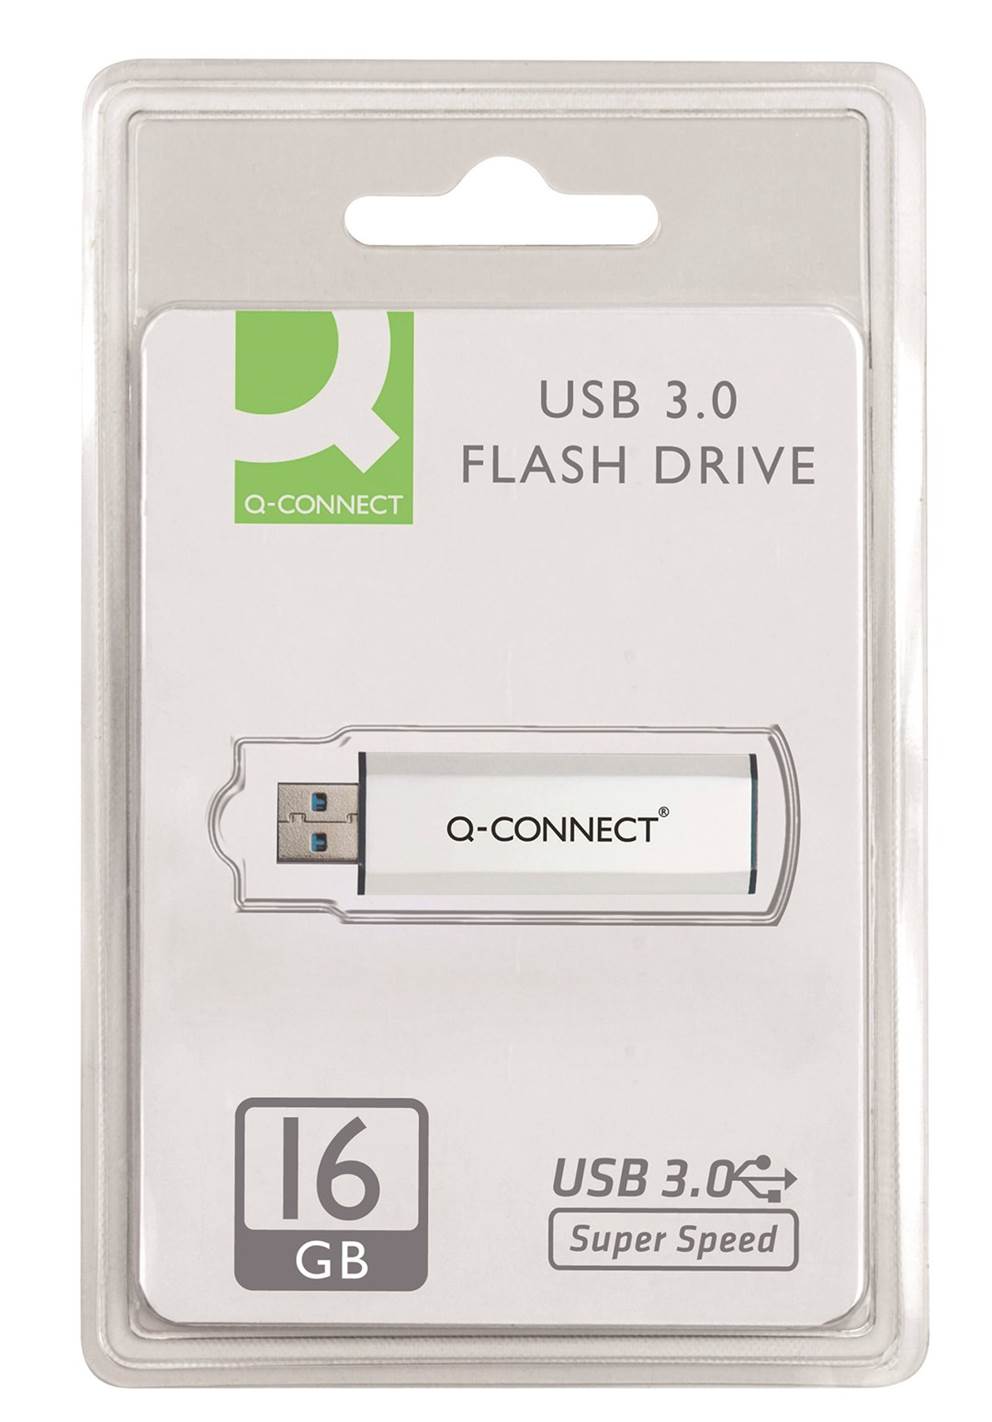 Nośnik pamięci Q-CONNECT USB 3.0, 16GB